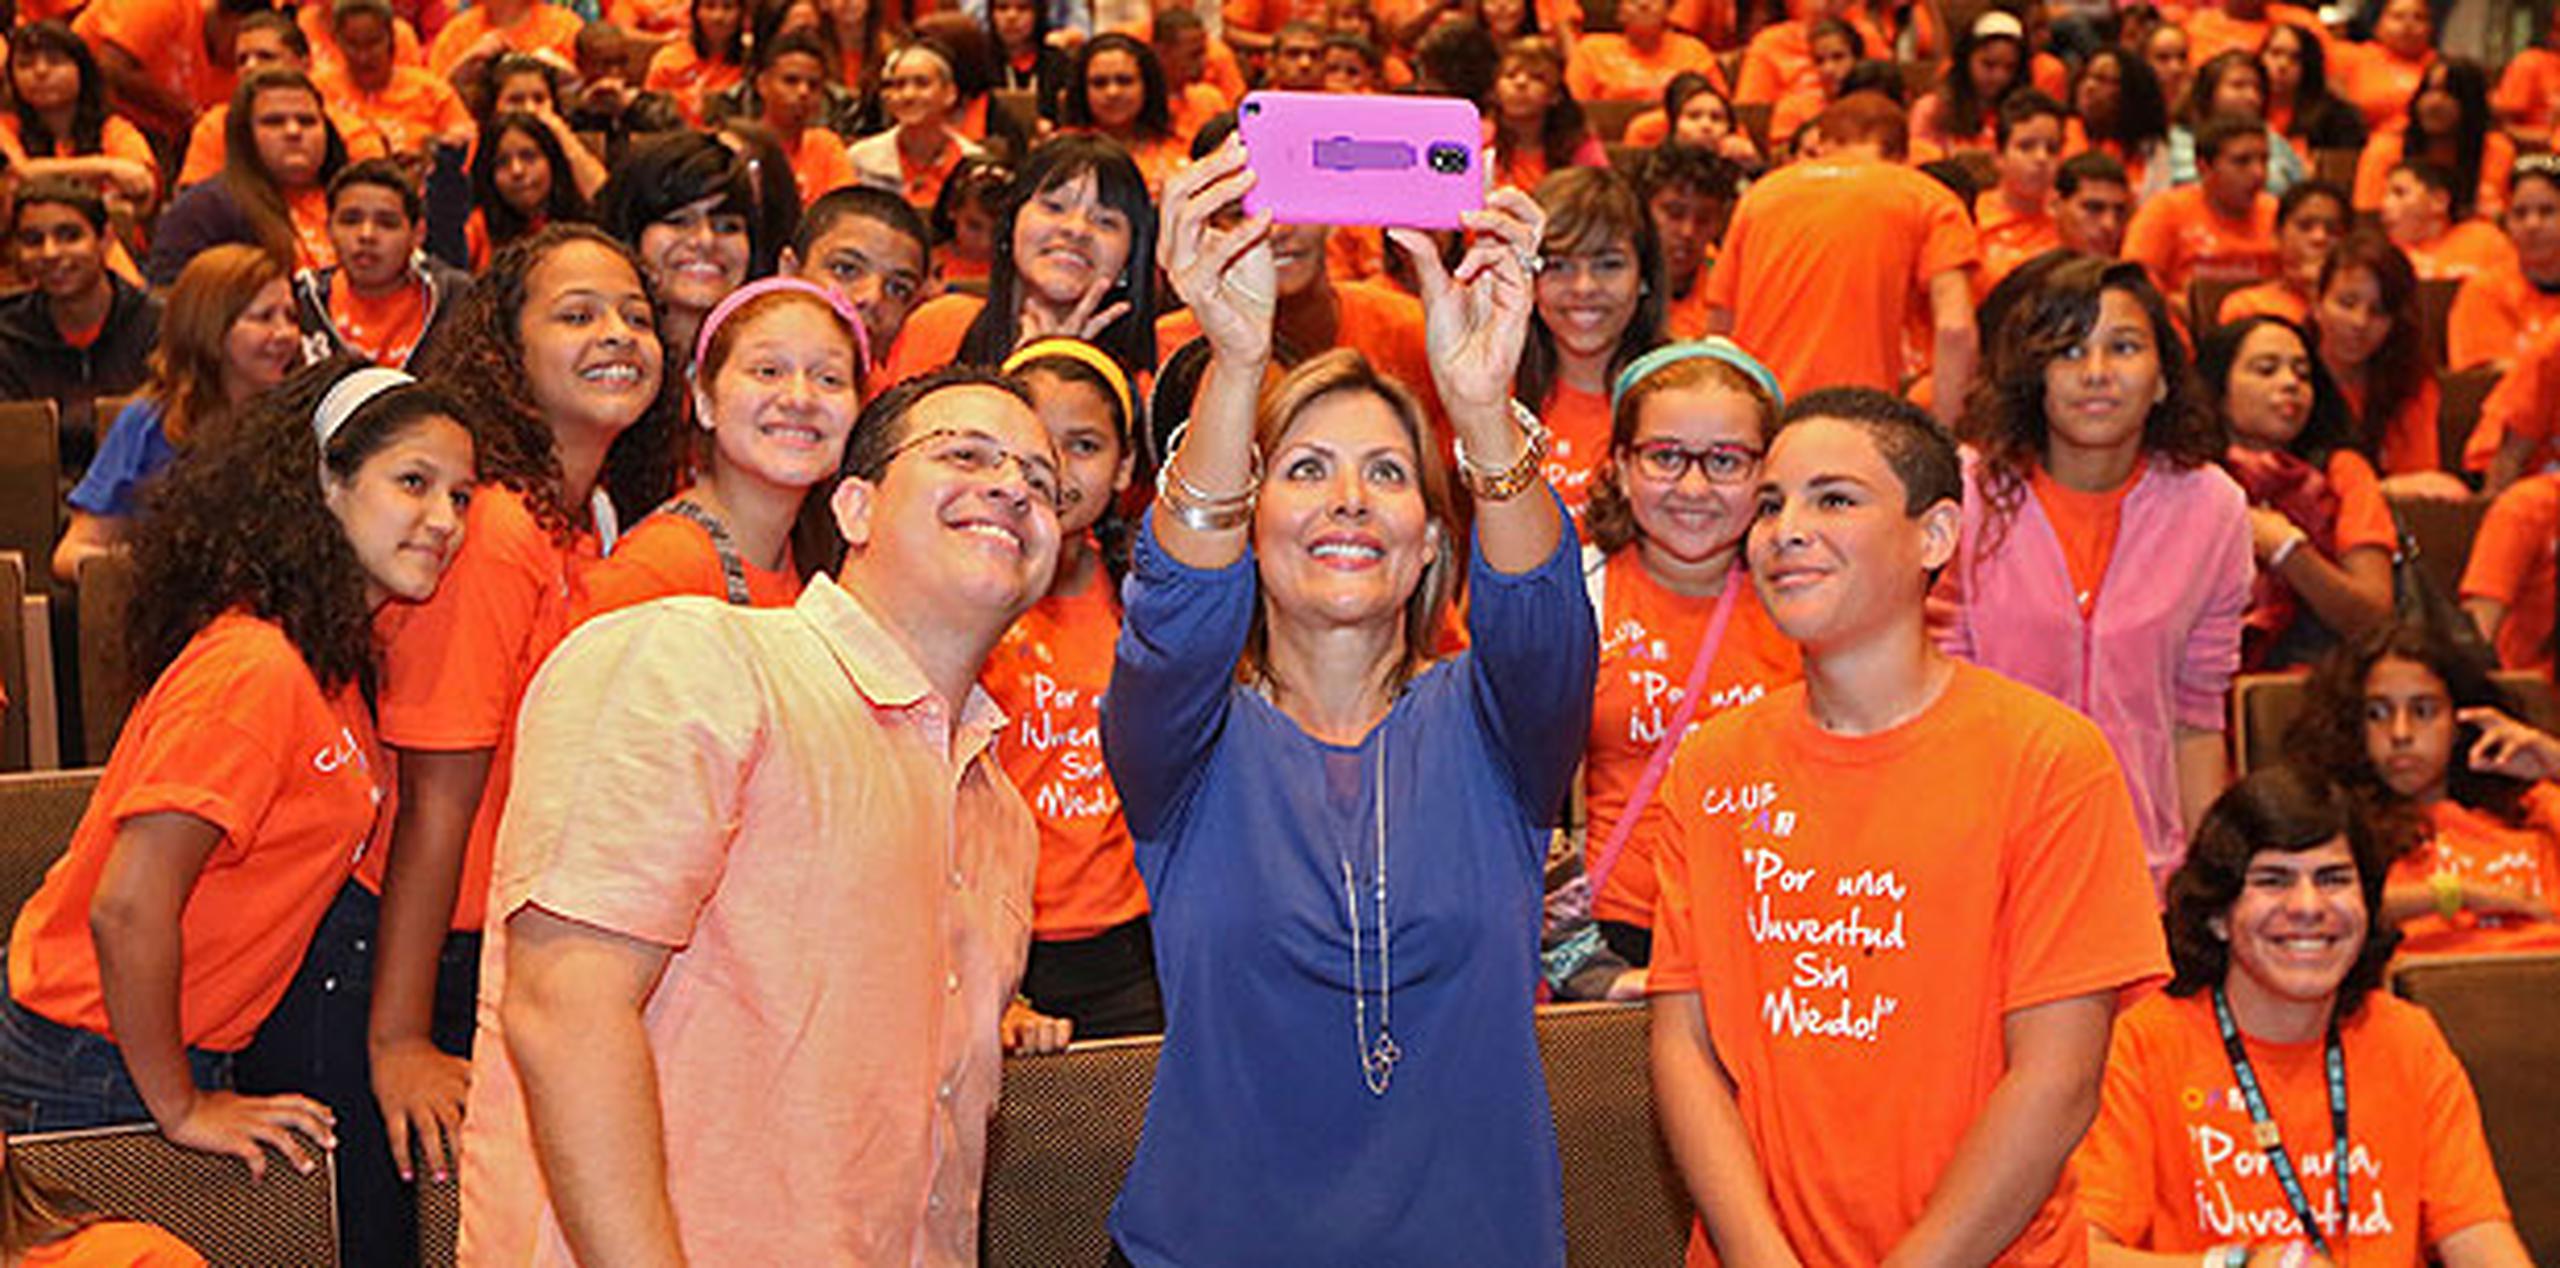 La primera dama se tomó un selfie con los estudiantes. (Suministrada)